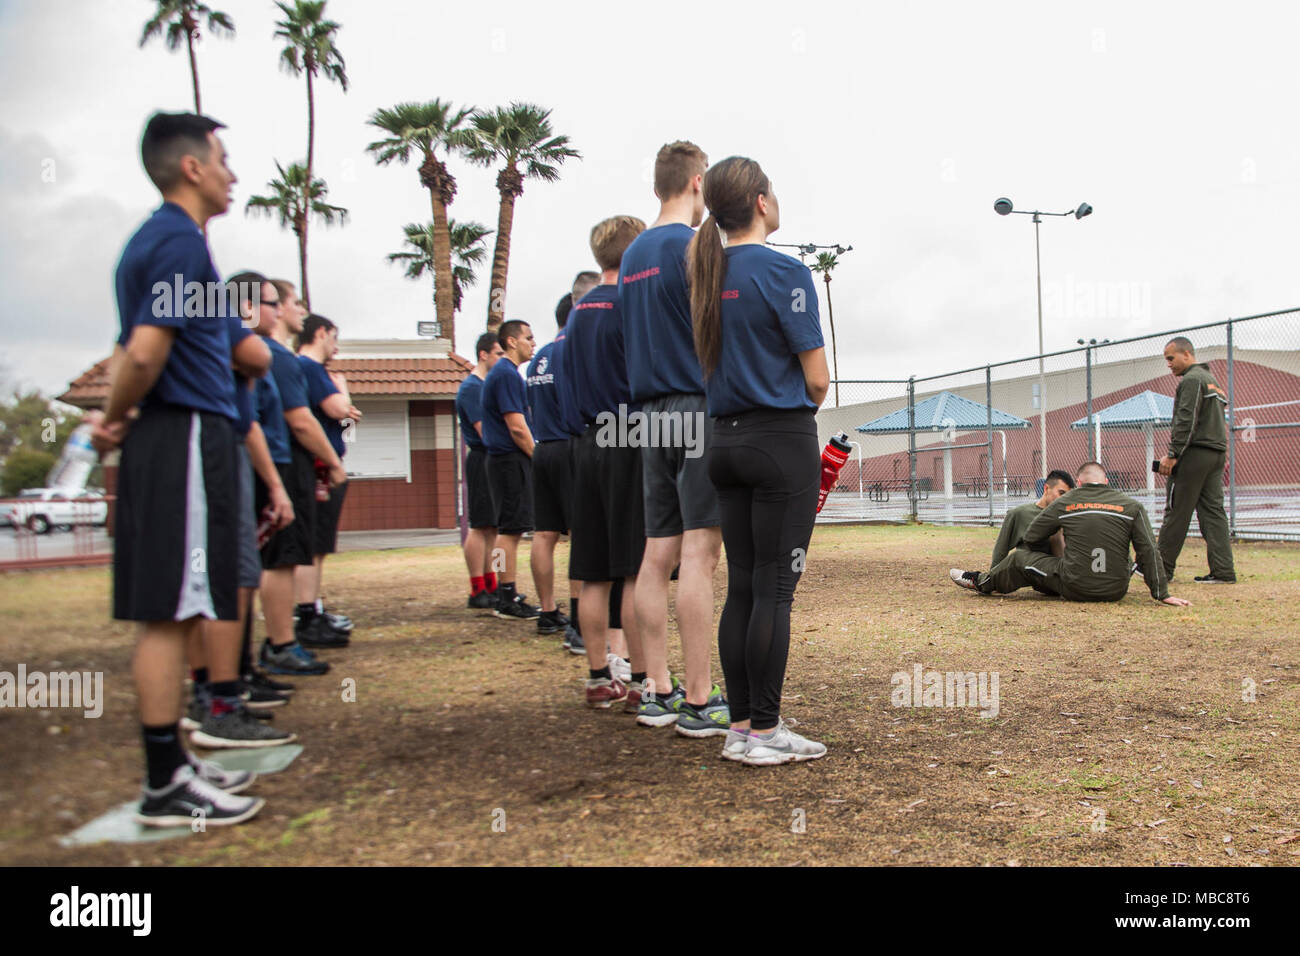 Maines américain avec de recrutement Phoenix faire un premier essai de résistance à l'Encanto Park, Phoenix, Arizona le 15 février 2018. L'IST assure poolees sont prêts pour le défi physique des recrues du Corps des marines les présente. Banque D'Images